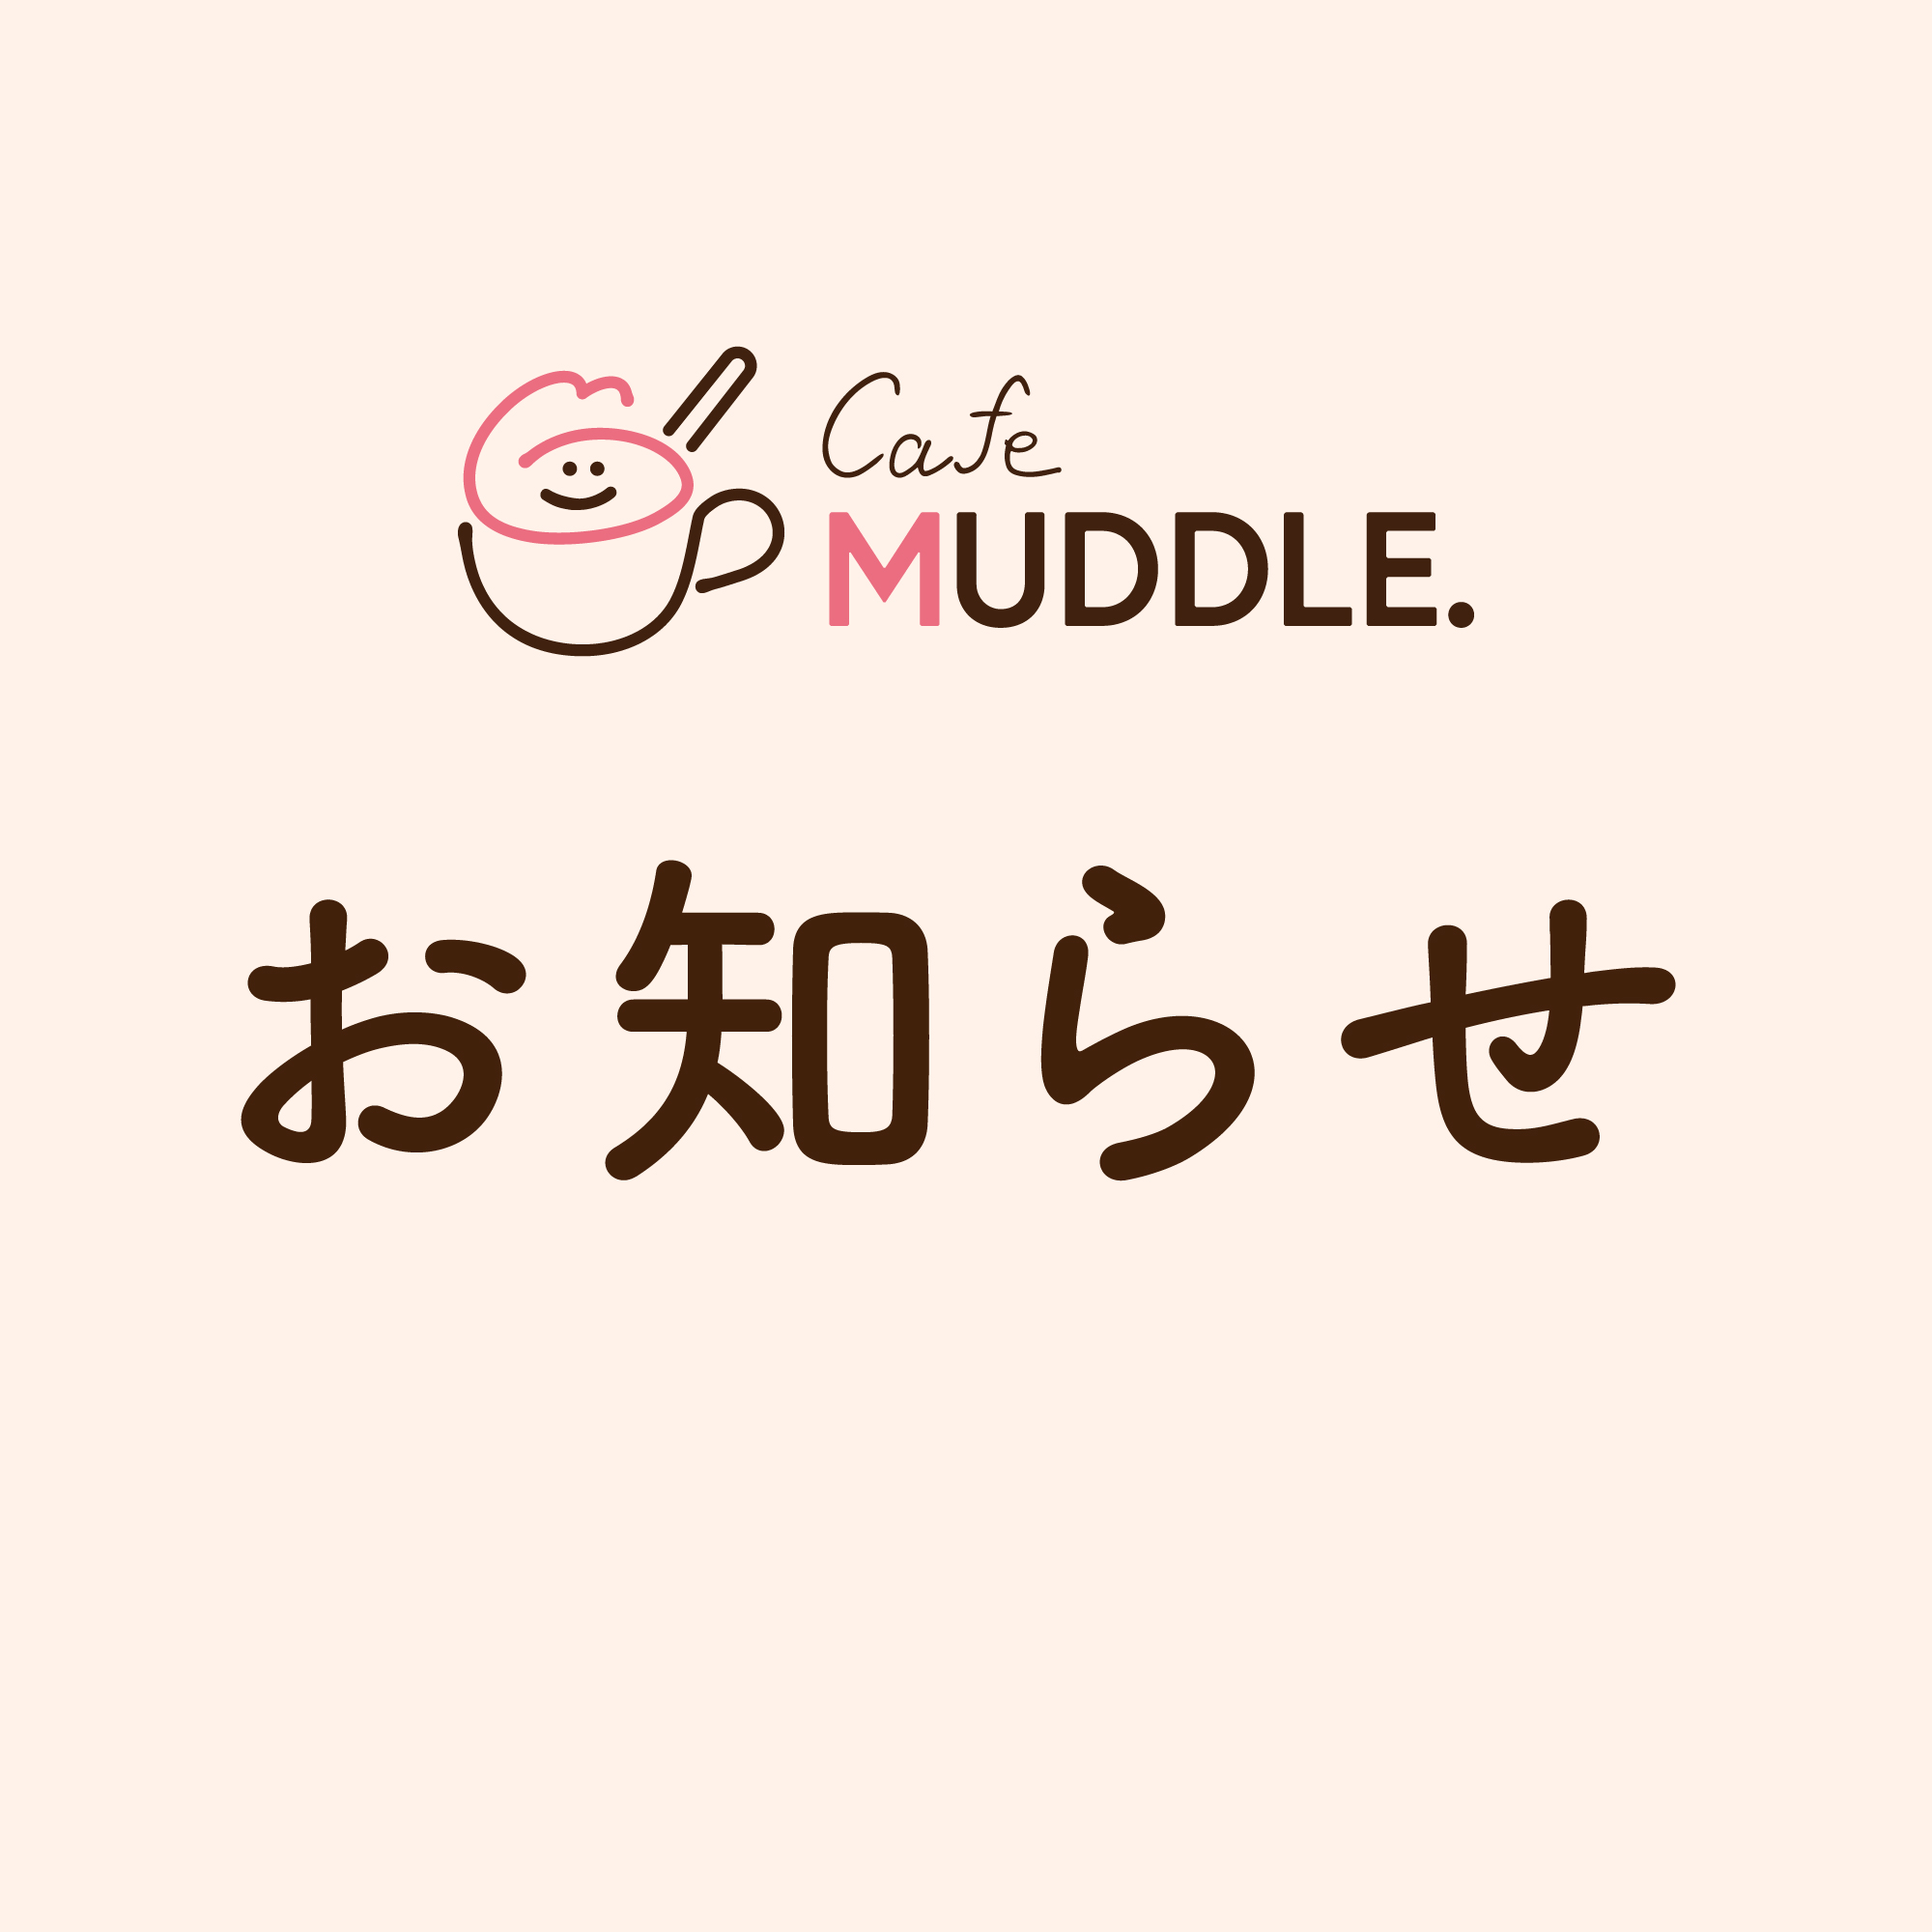 【6/16更新】カフェ「MUDDLE.」業務縮小について